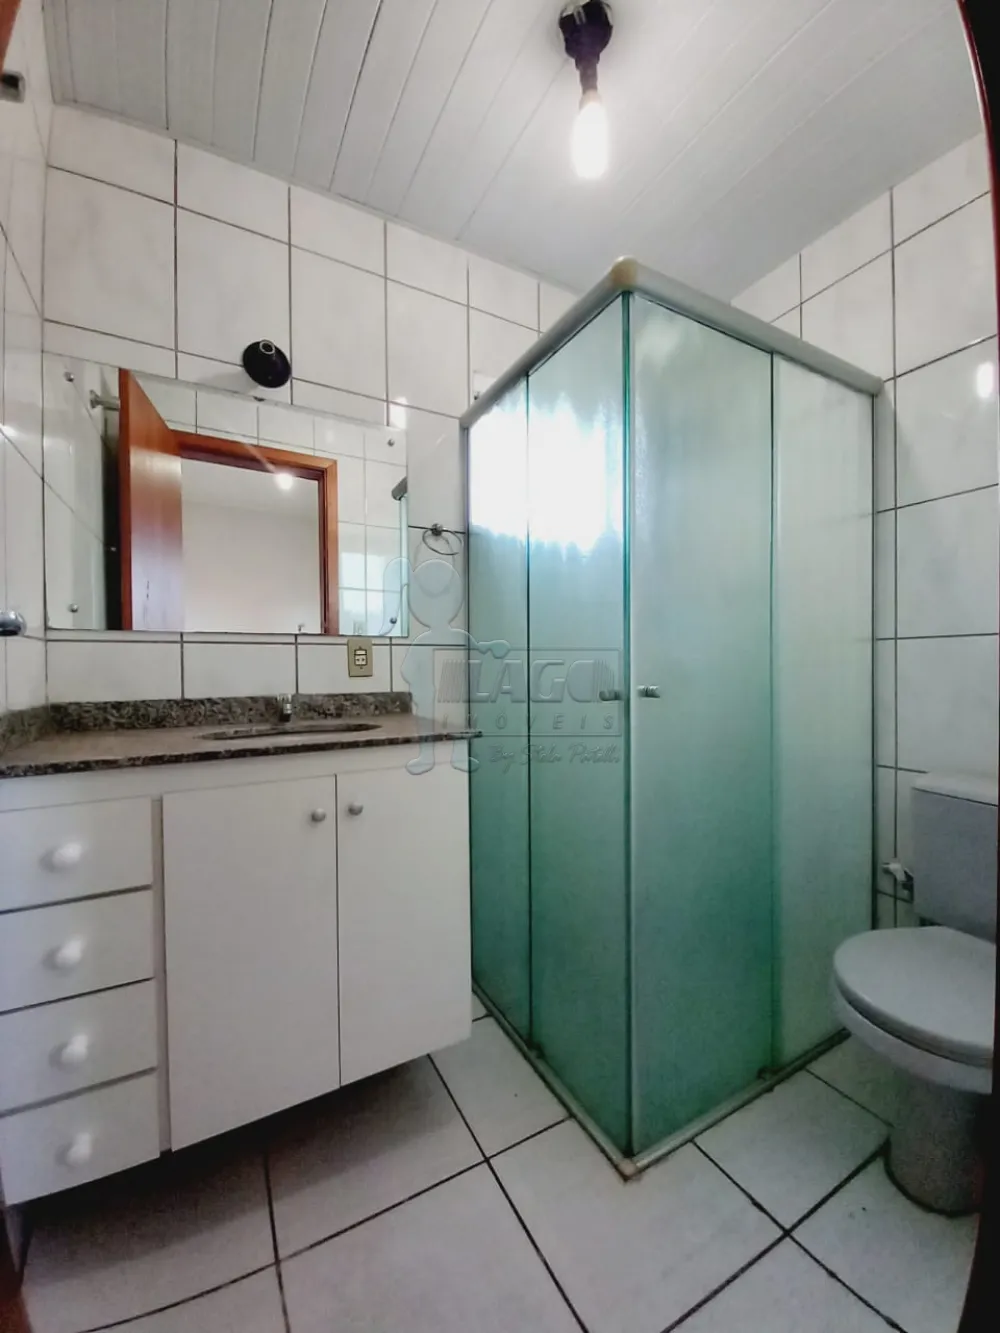 Comprar Apartamento / Padrão em Ribeirão Preto R$ 290.000,00 - Foto 11